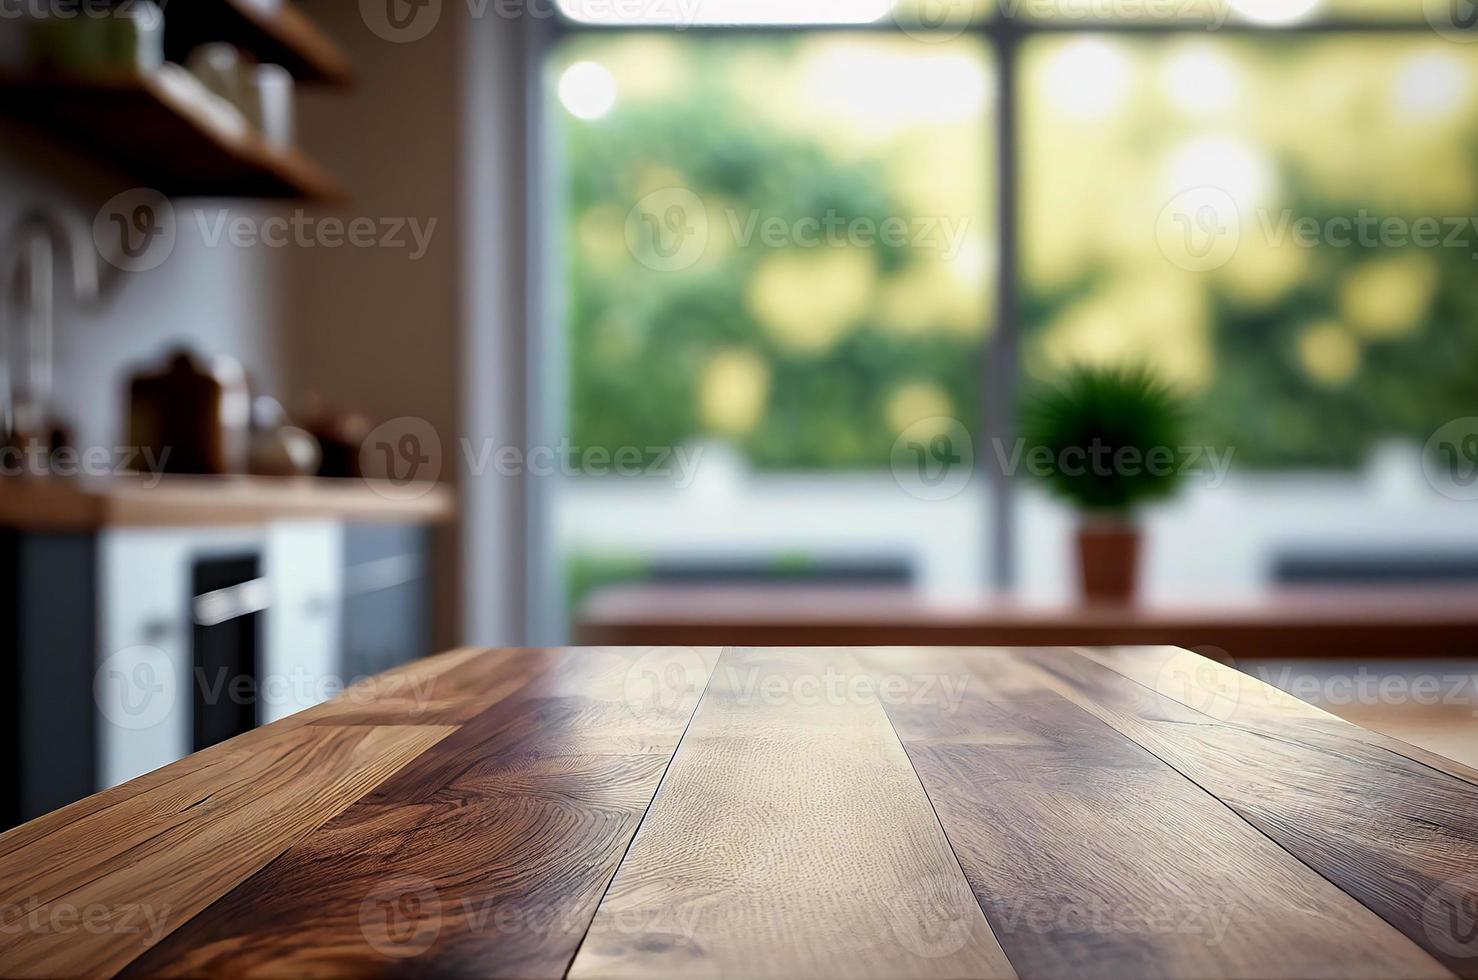 abstrakt tömma trä- skrivbord tabell med kopia Plats över interiör modern kök rum och fönster suddig bakgrund, visa för produkt montage foto